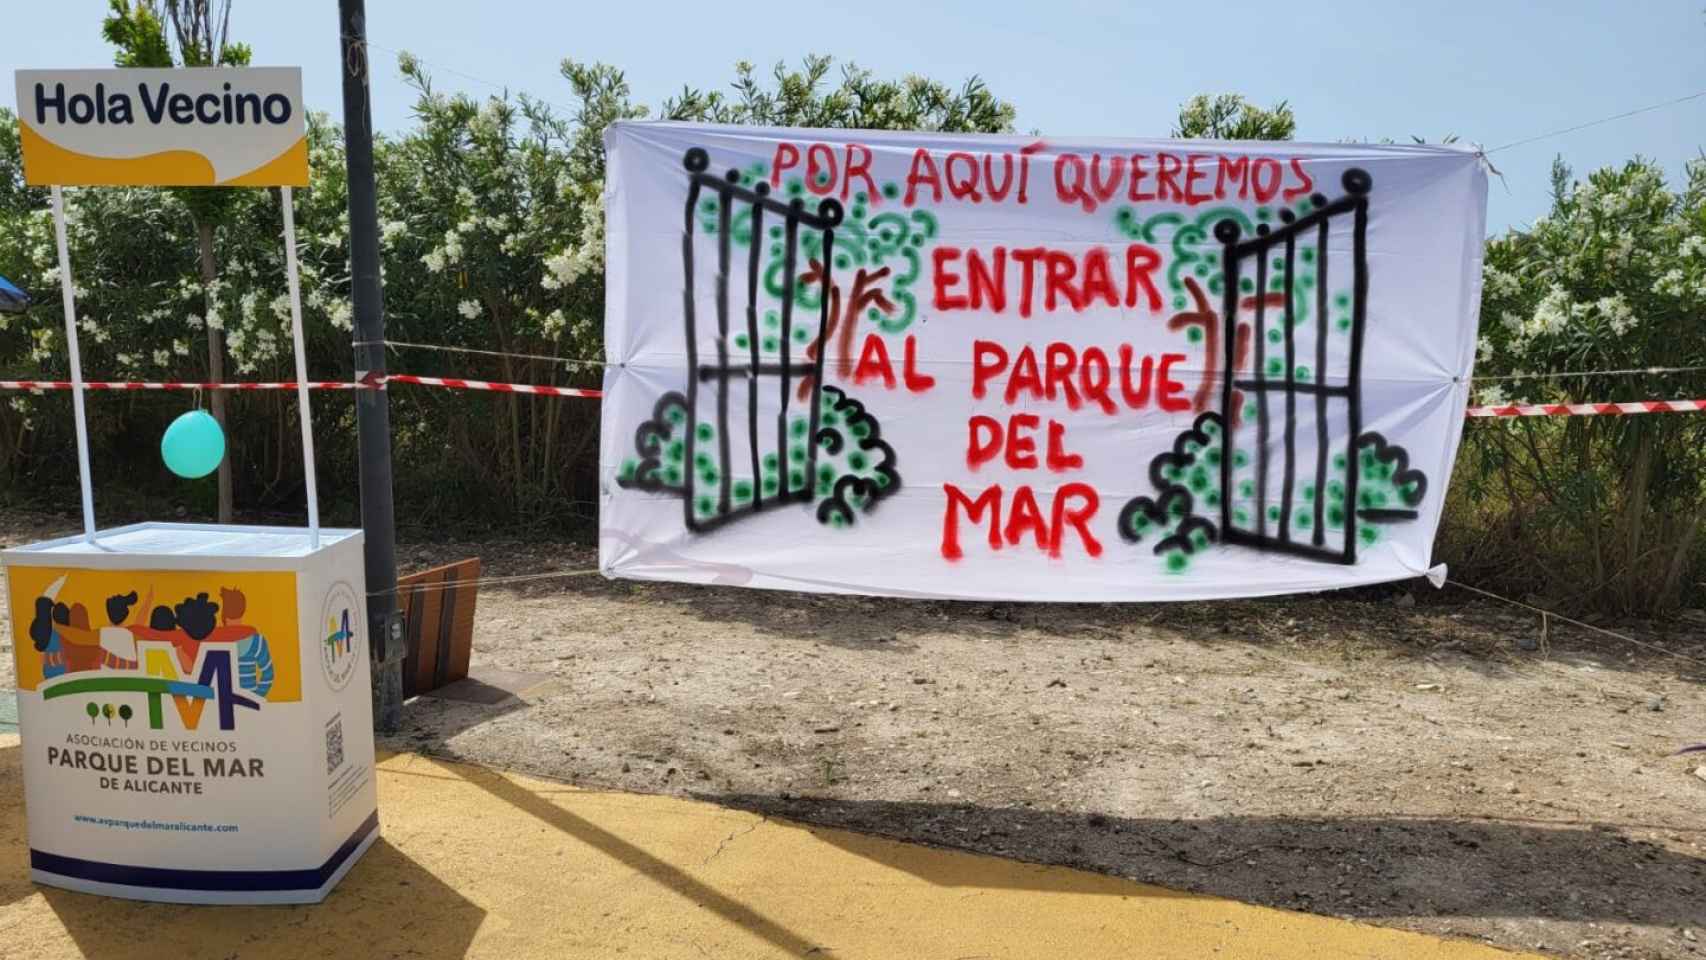 Manifestación de la asociación de vecinos Parque del Mar, Alicante.